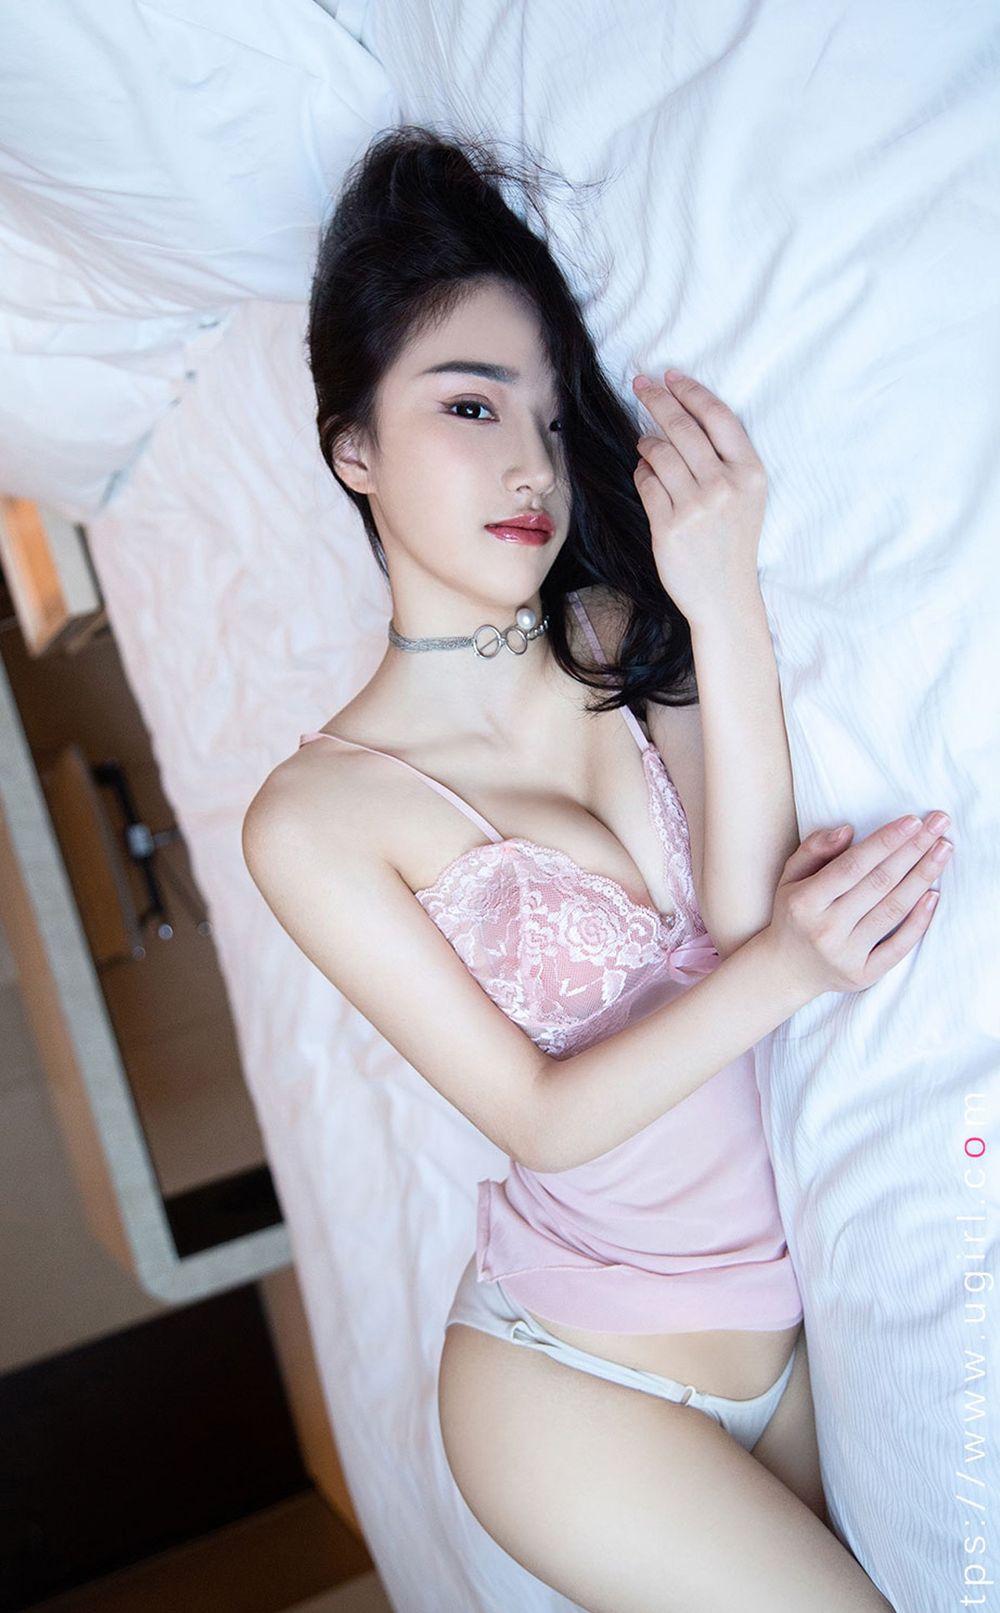 尤果网美女模特西门小玉粉色吊带睡衣修长美腿私房写真